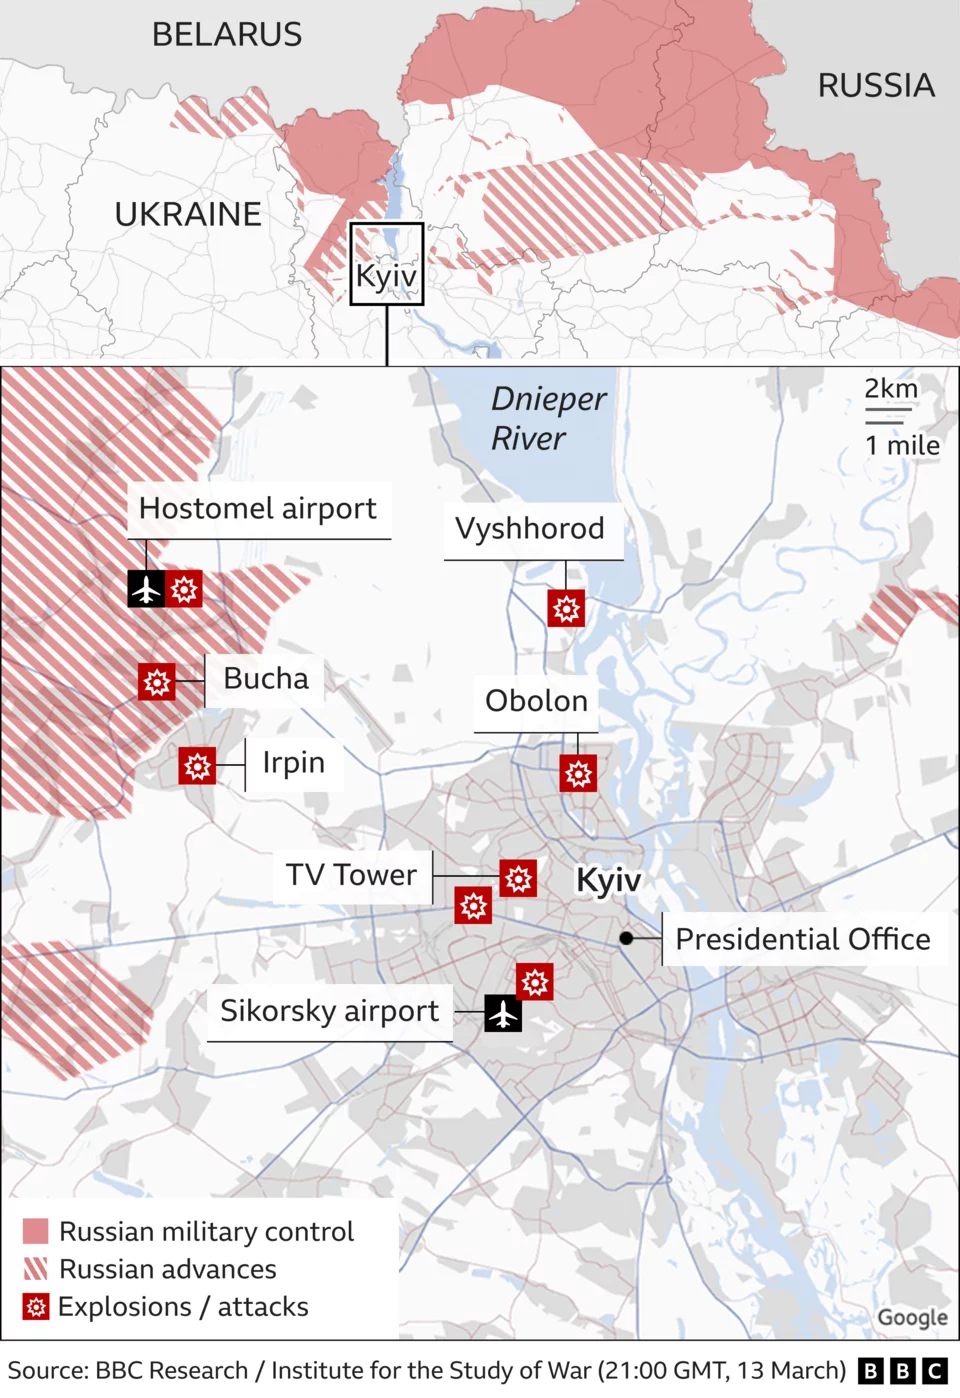 Χάρτης του BBC που δείχνει τις ρωσικές προελάσεις και επιθέσεις στο Κίεβο